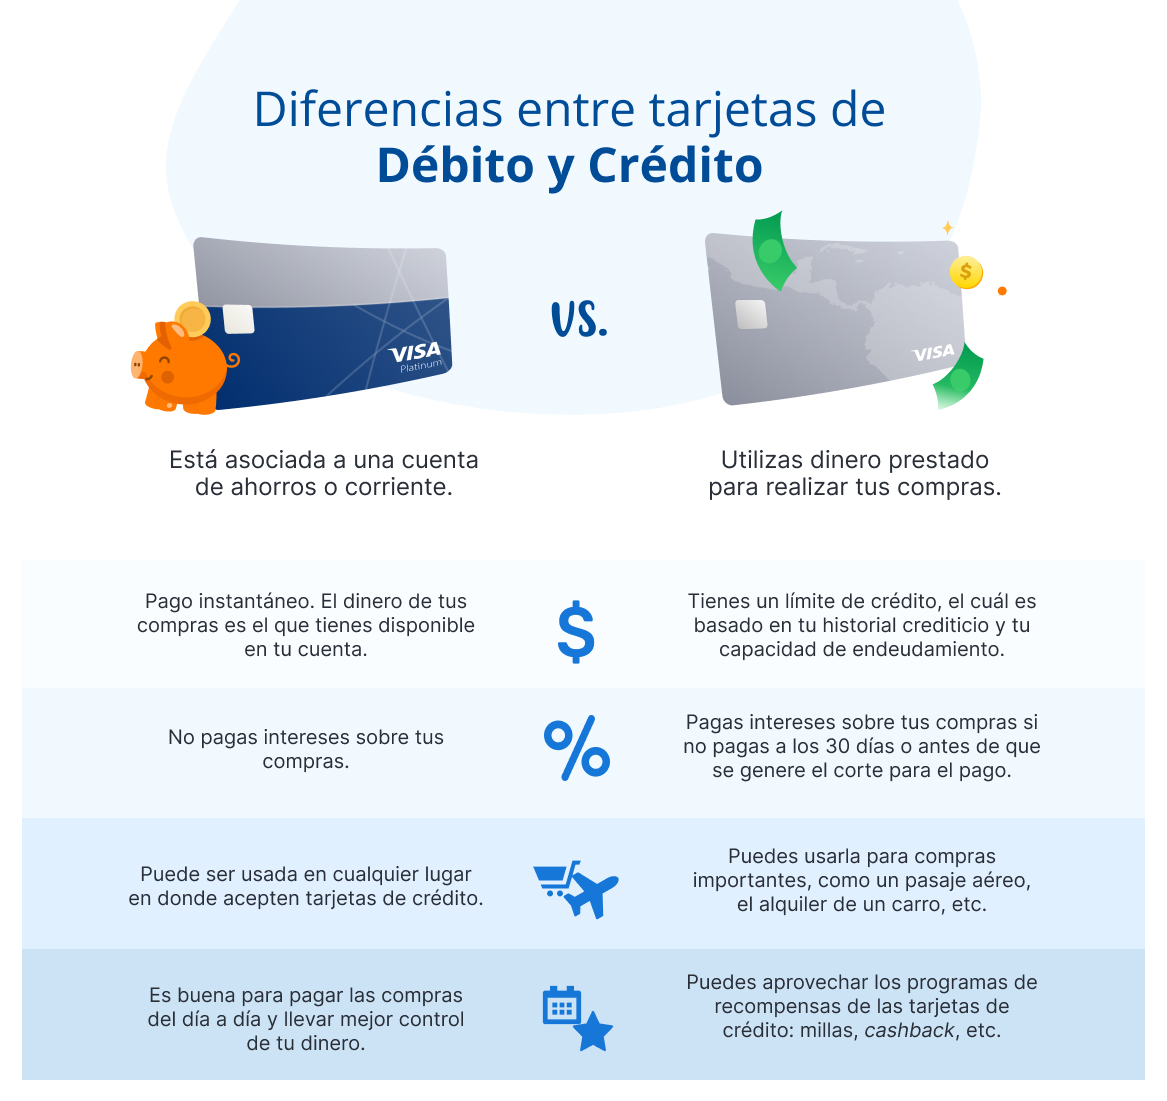 Diferencias entre tarjetas de débito y crédito